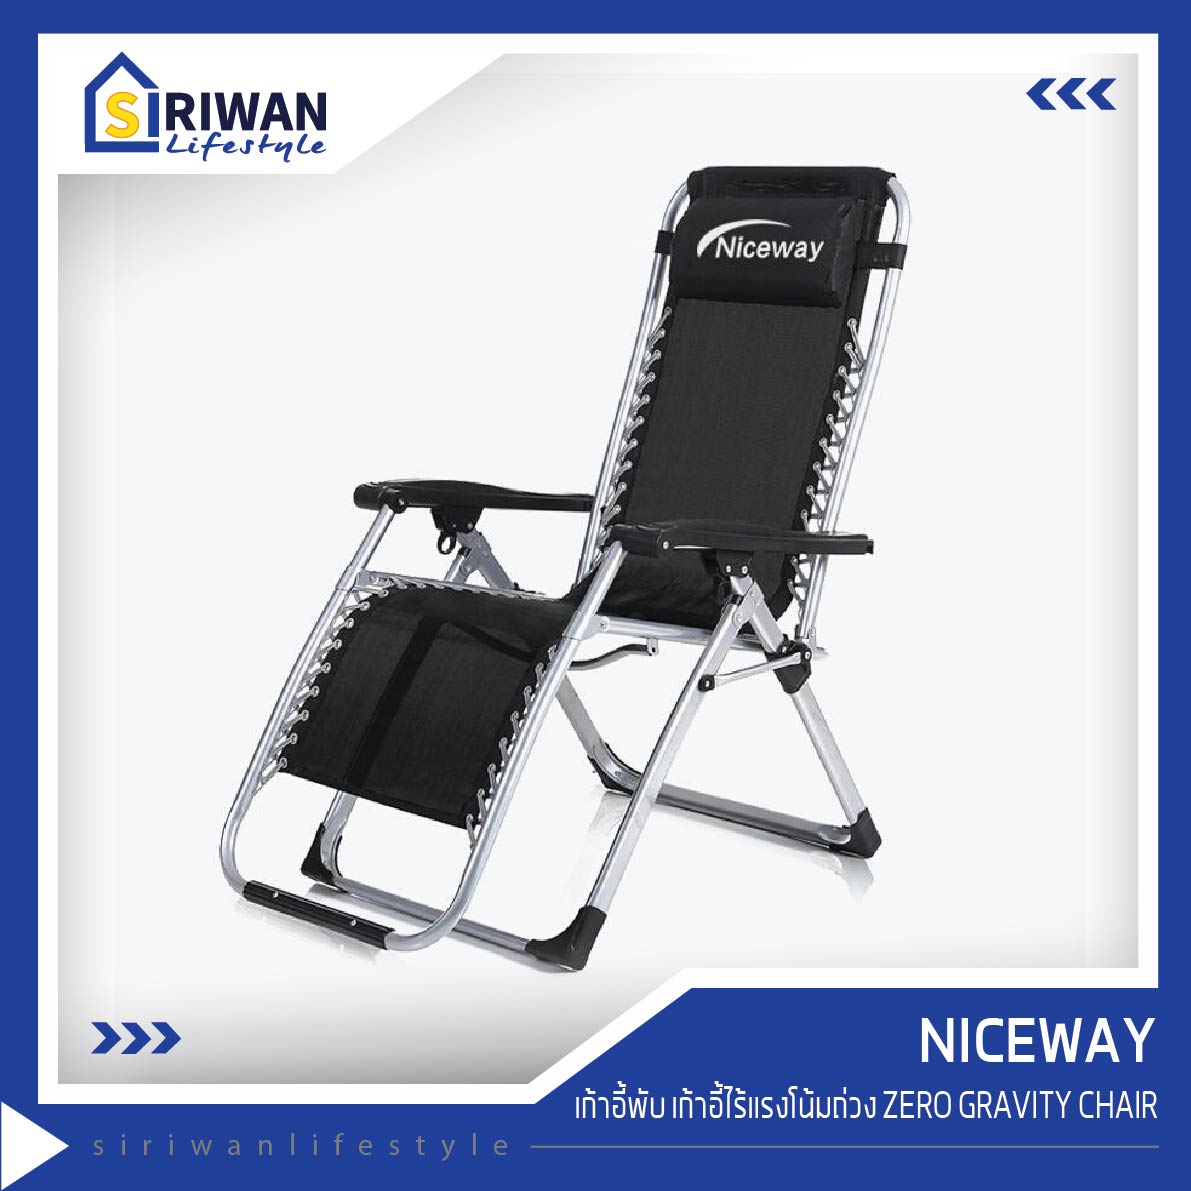 Niceway เก้าอี้พับ เก้าอี้ไร้แรงโน้มถ่วง ZERO GRAVITY CHAIR เก้าอี้ปรับนอน เตียงสนาม เก้าอี้สนาม รับน้ำหนักได้ 120กก. รุ่น YN0539